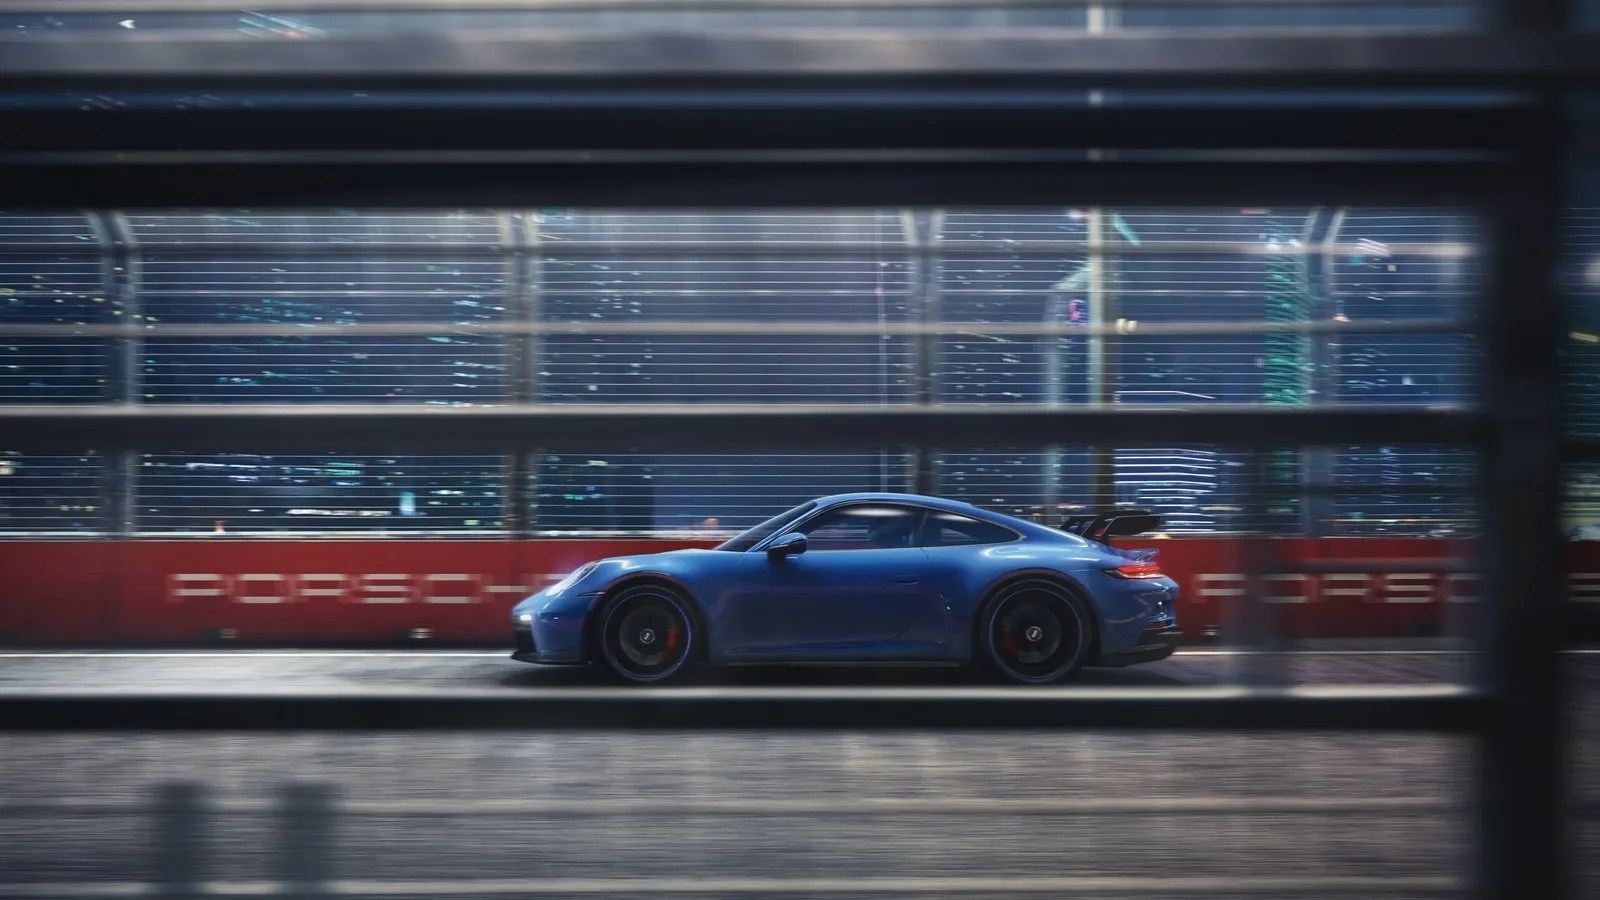 In diesen kapiteln finden sie weitere details. 10 Things You Must Know About the 2022 Porsche 911 GT3